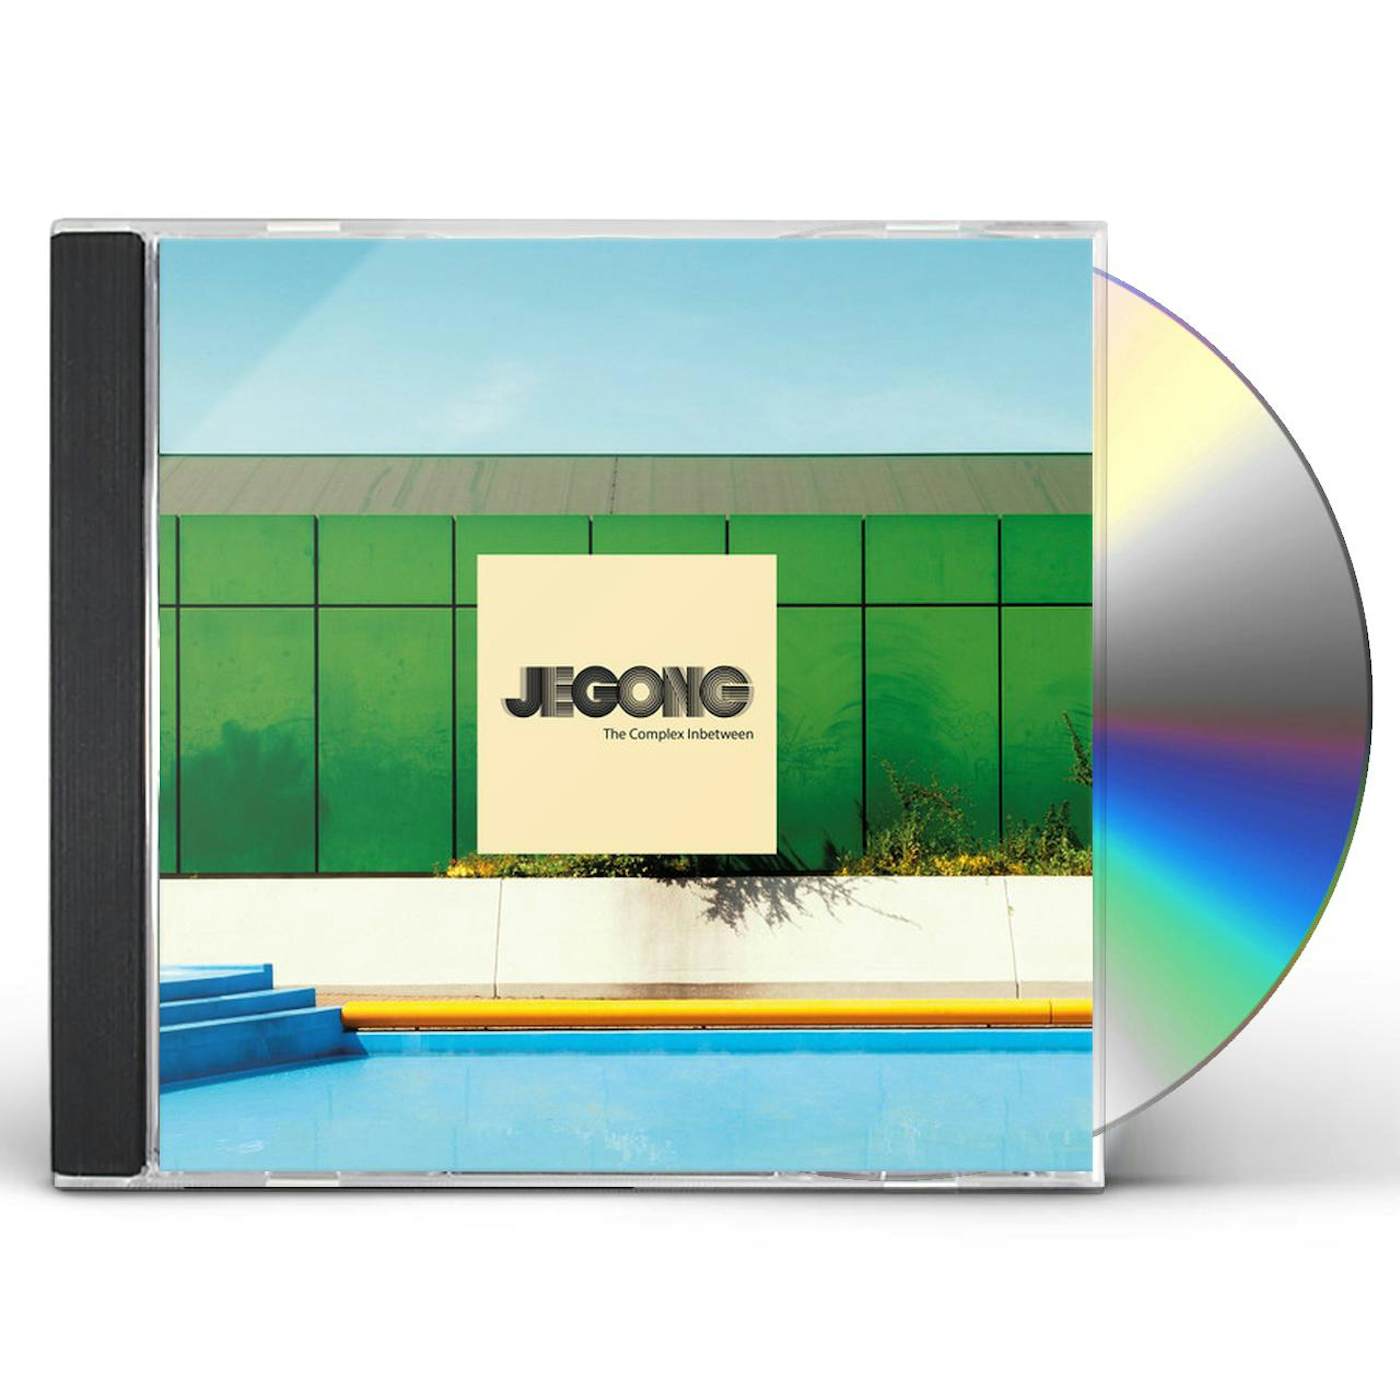 JeGong COMPLEX INBETWEEN CD